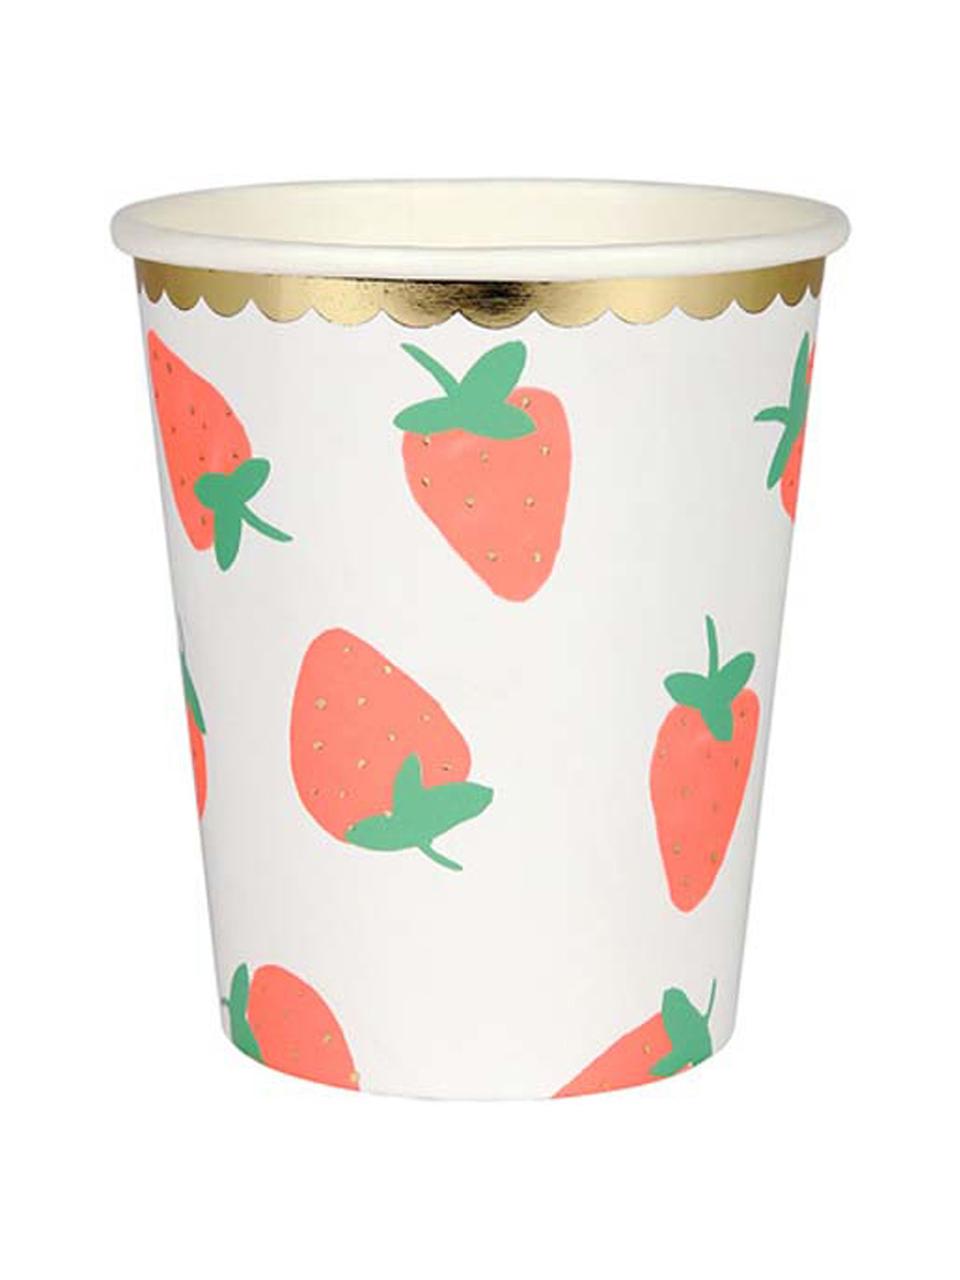 Papírový pohárek Strawberry, 8 ks, Bílá, růžová, zelená